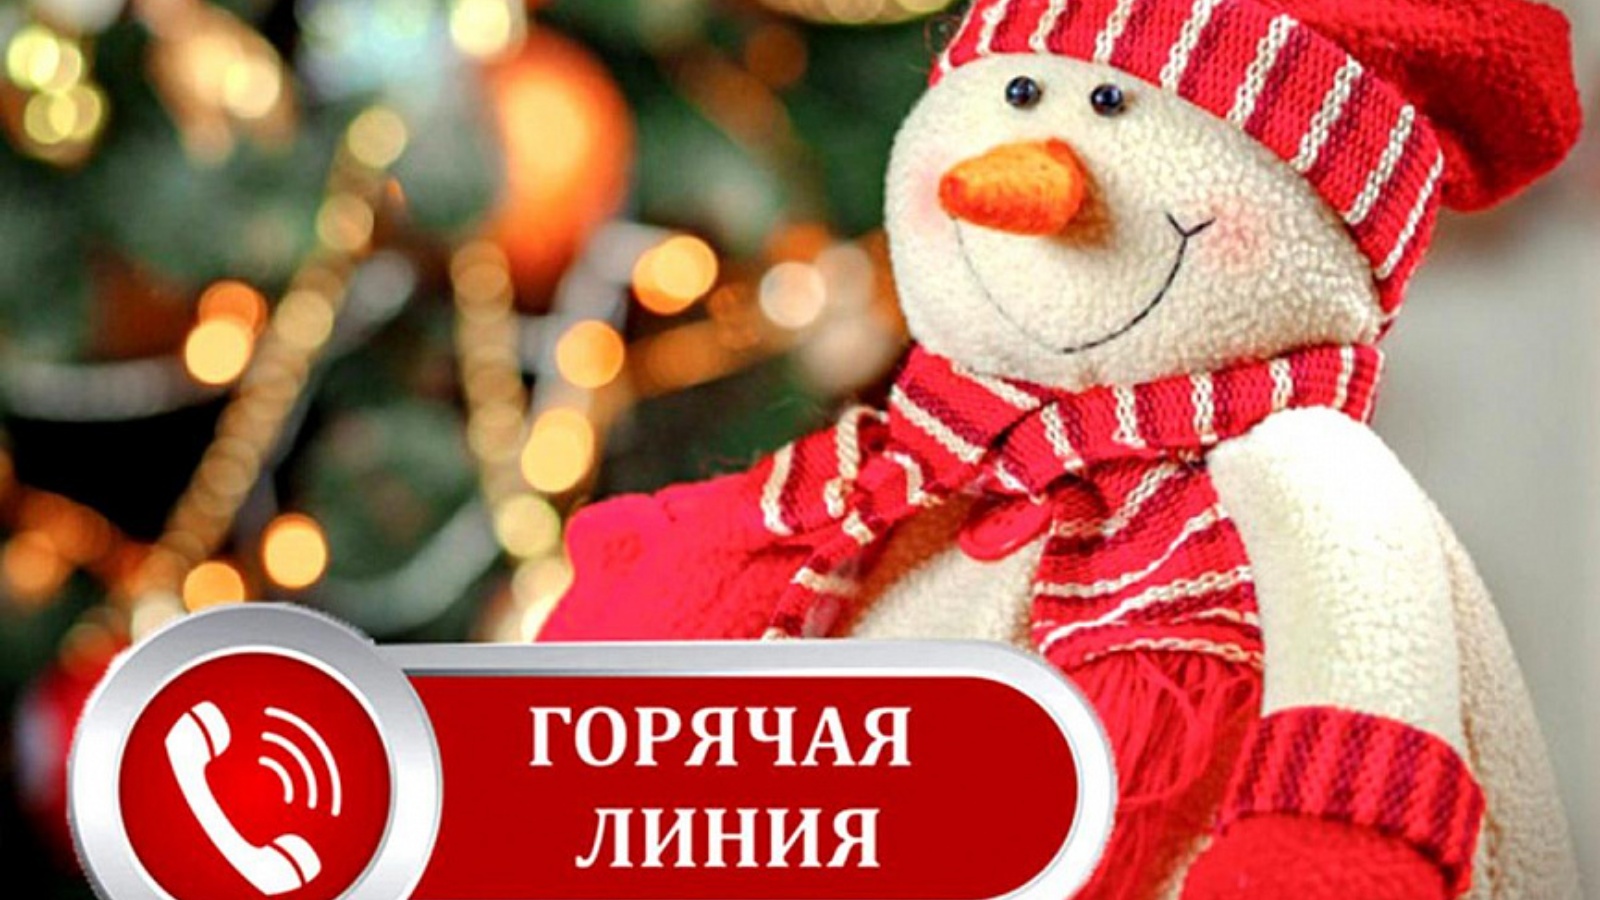 Проводится «горячая линия» по вопросам качества и безопасности детских товаров, по выбору новогодних подарков.